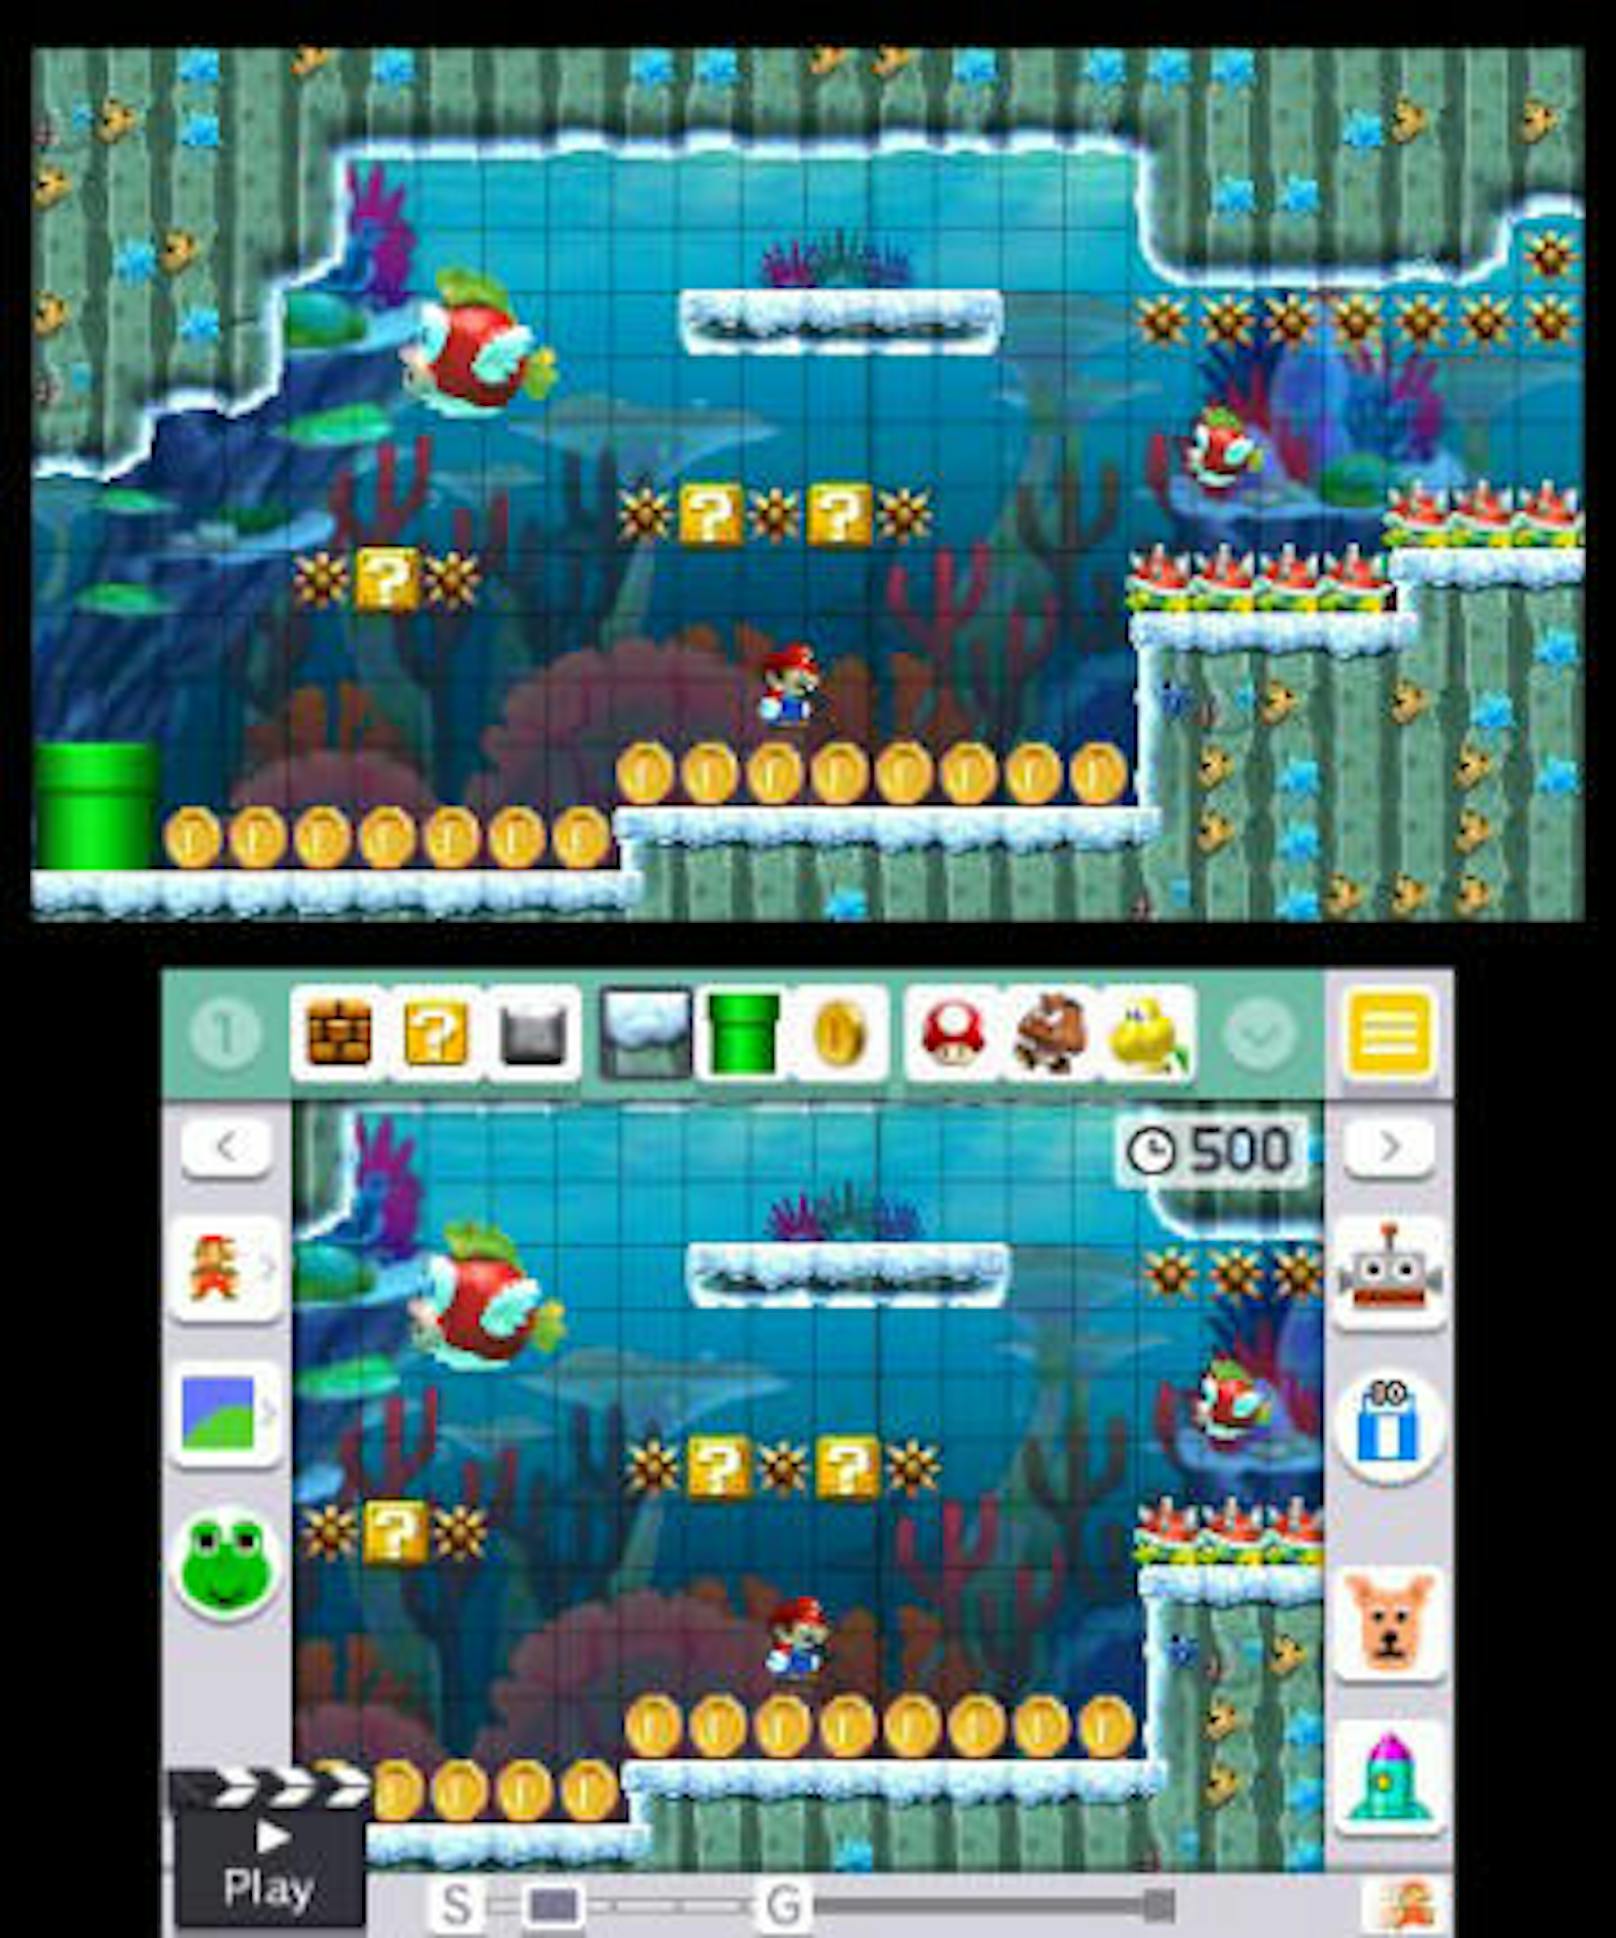 Dazu dient die genannte Mario-Herausforderung, bei der neben dem Level-Durchspielen auch Ziele (sammle alle Münzen ein, besiege alle Gegner) erreicht werden sollen.